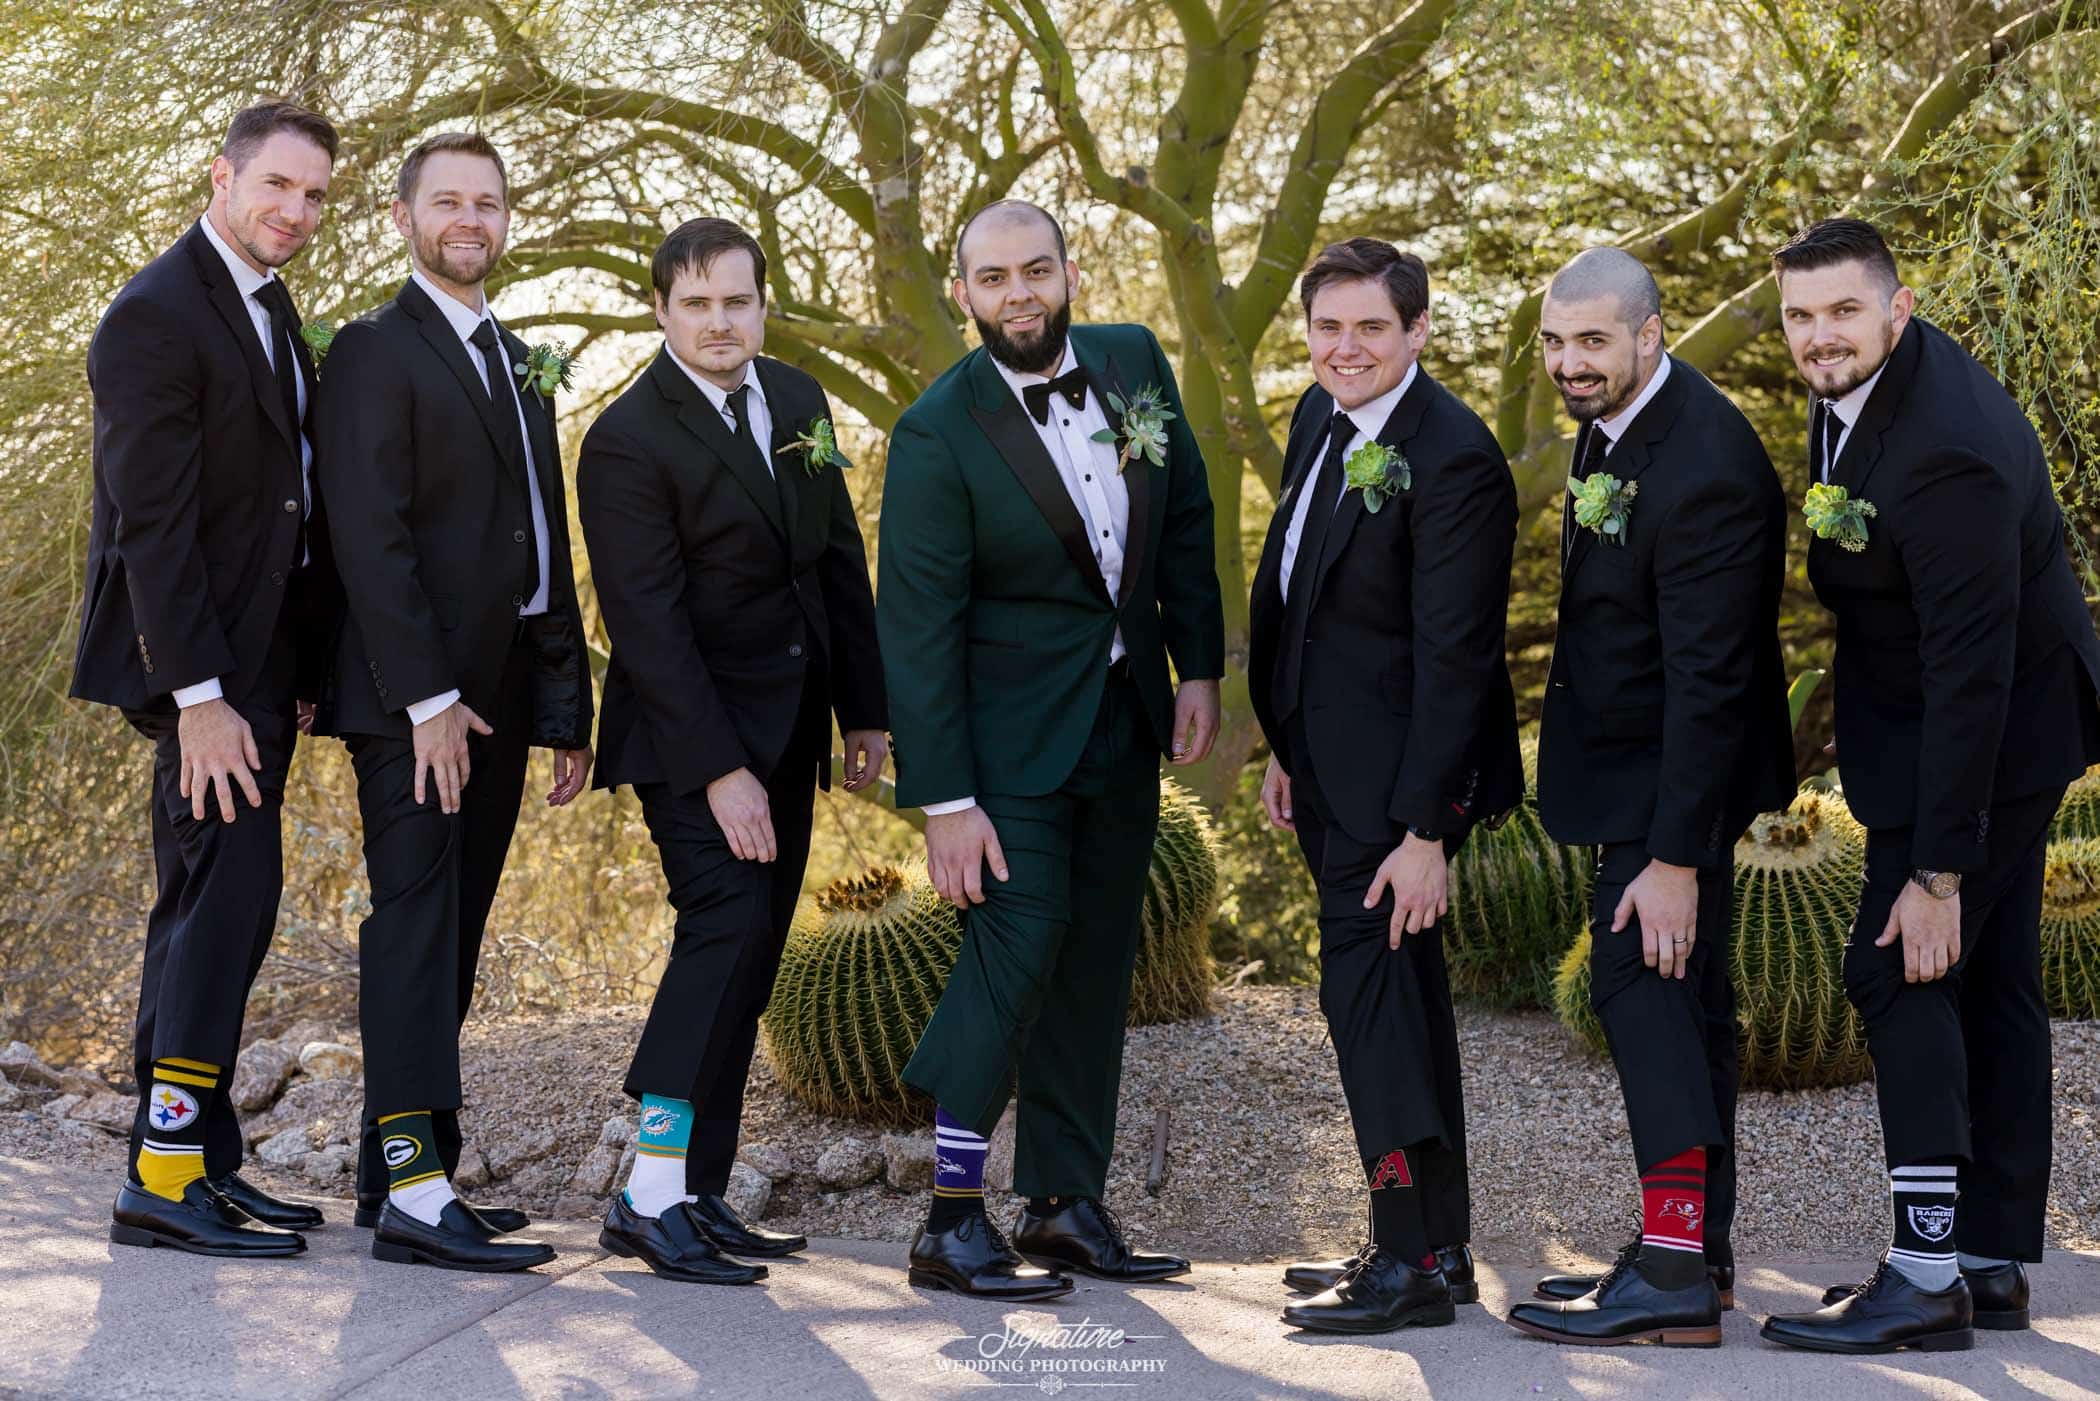 Groom and groomsmen showing off team socks